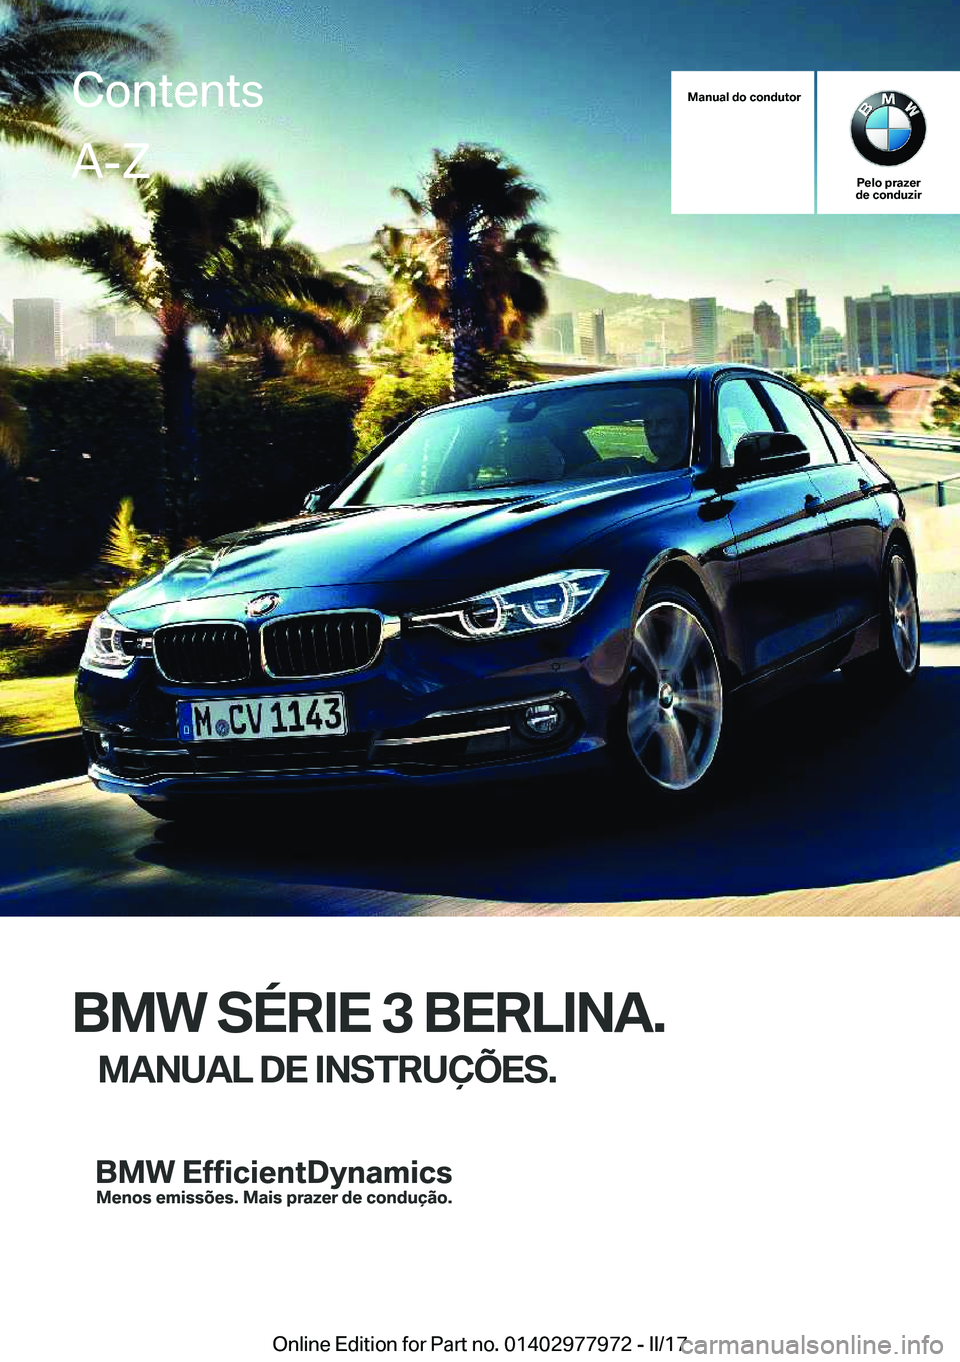 BMW 3 SERIES 2017  Manual do condutor (in Portuguese) �M�a�n�u�a�l��d�o��c�o�n�d�u�t�o�r
�P�e�l�o��p�r�a�z�e�r
�d�e��c�o�n�d�u�z�i�r
�B�M�W��S�